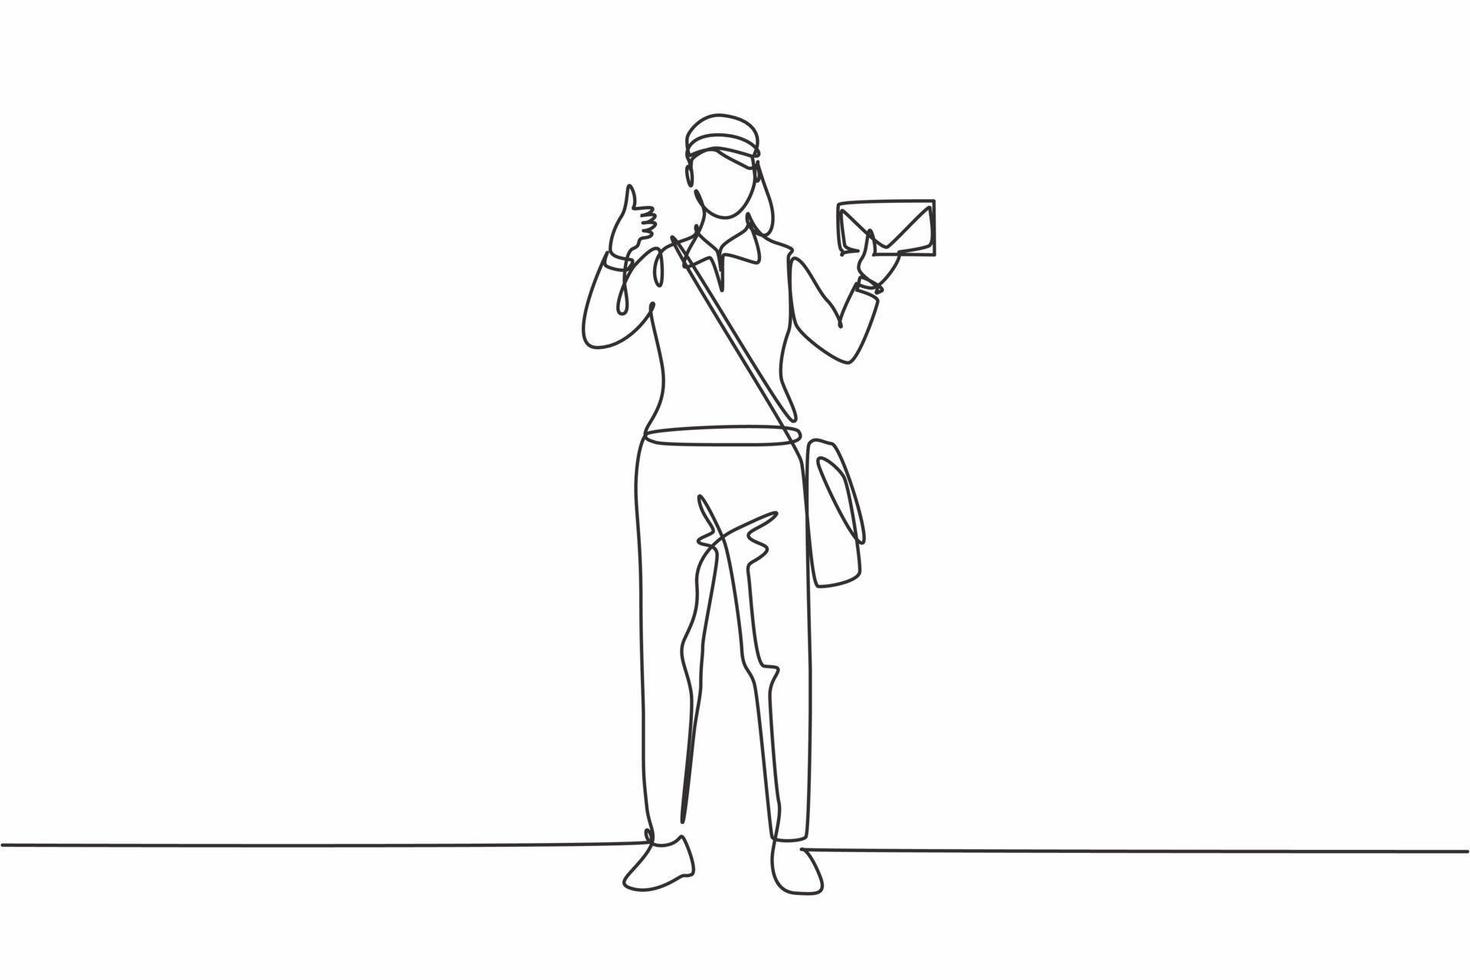 einzelne einzeilige Zeichnung einer Briefträgerin, die in einem Hut, einer Tasche, einer Uniform steht, einen Umschlag hält und mit einer Daumen-hoch-Geste Post liefert. moderne durchgehende Linie zeichnen Design-Grafik-Vektor-Illustration vektor